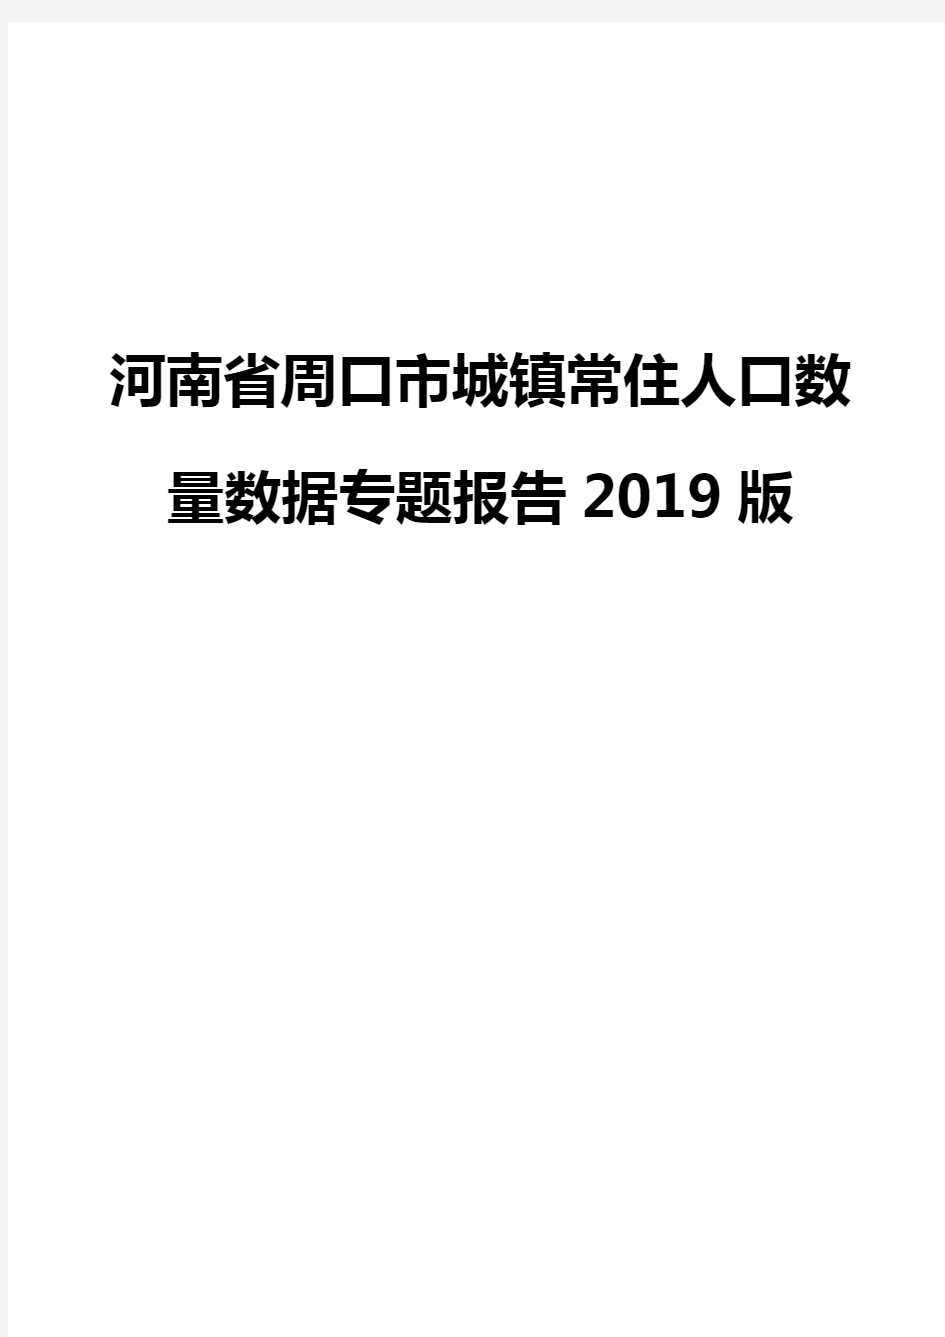 河南省周口市城镇常住人口数量数据专题报告2019版